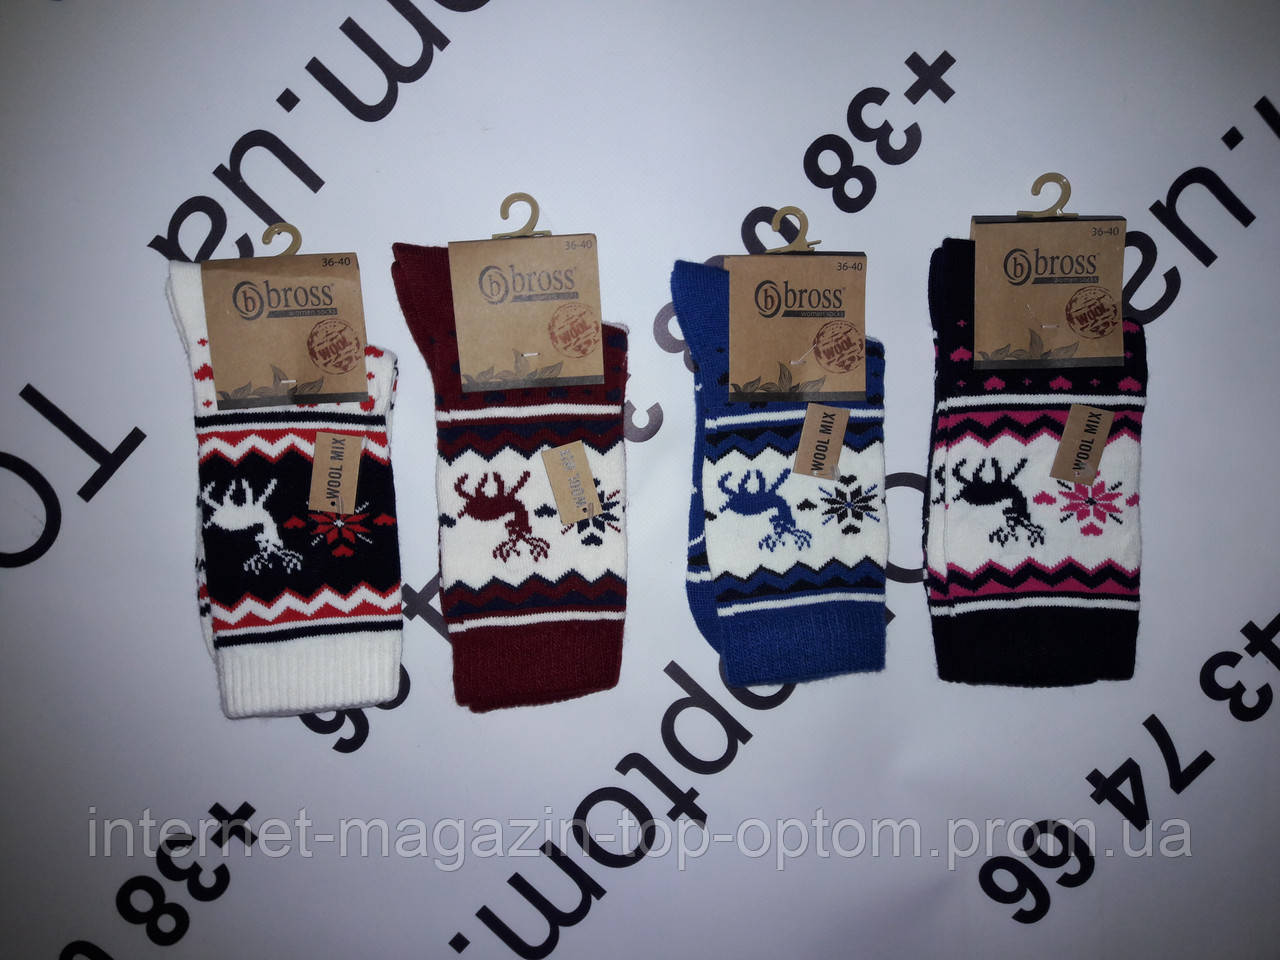 Шкарпетки жіночі, новорічні, шерстяні  Bross опт